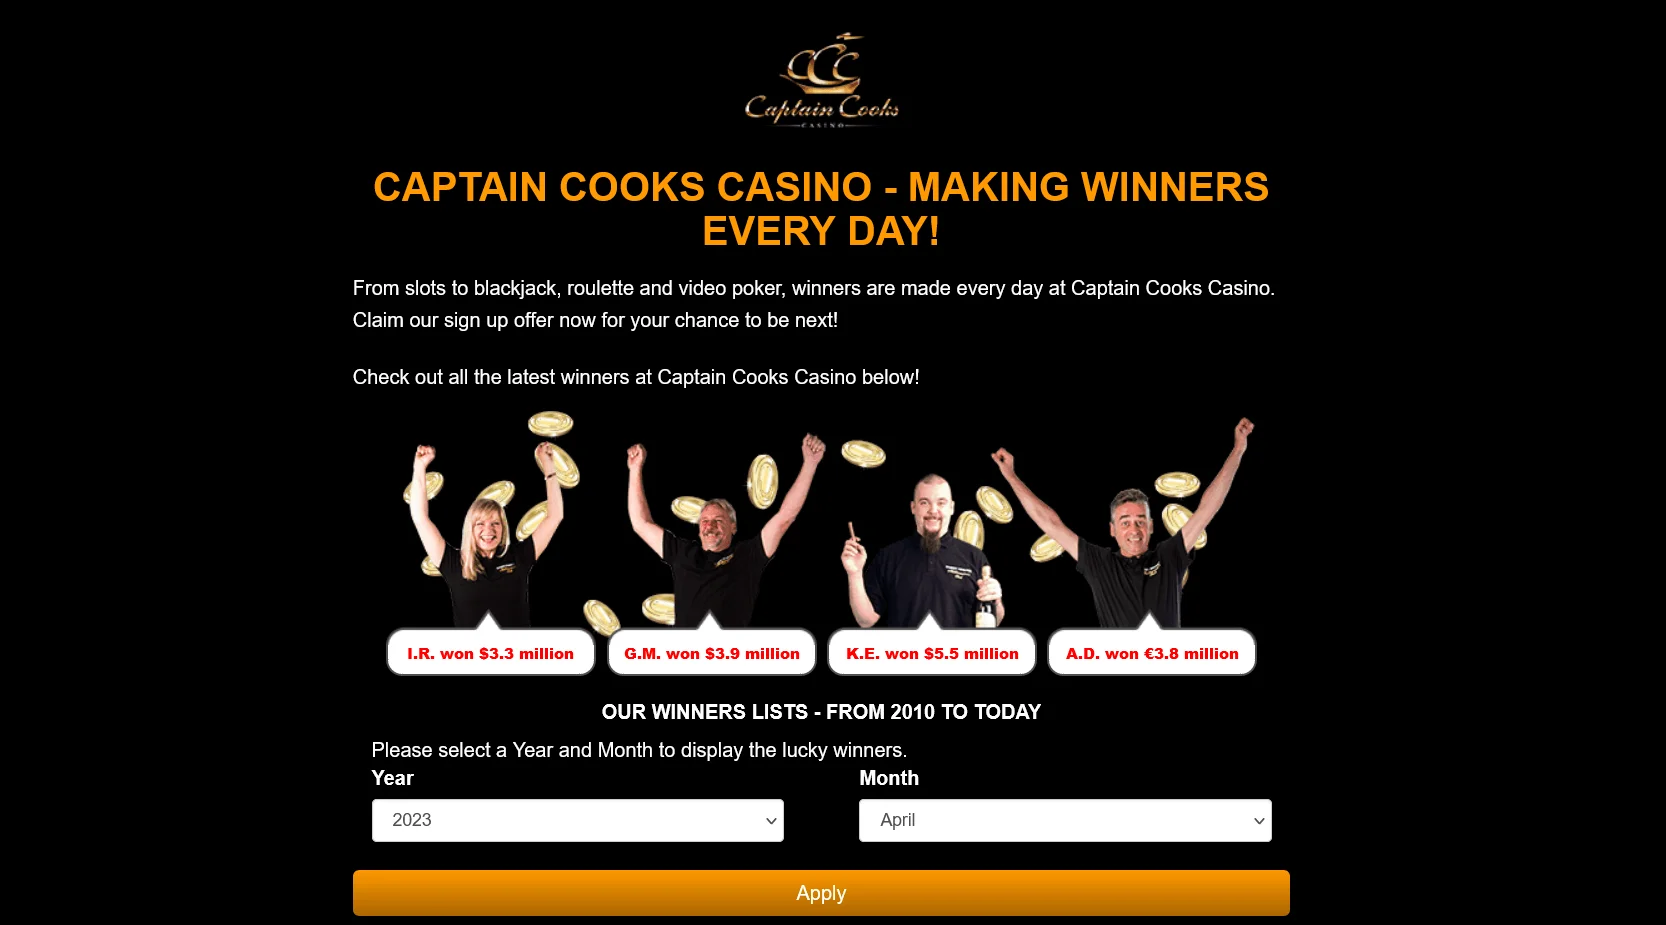 Operaciones bancarias seguras y protección de datos en Captain Cooks Casino